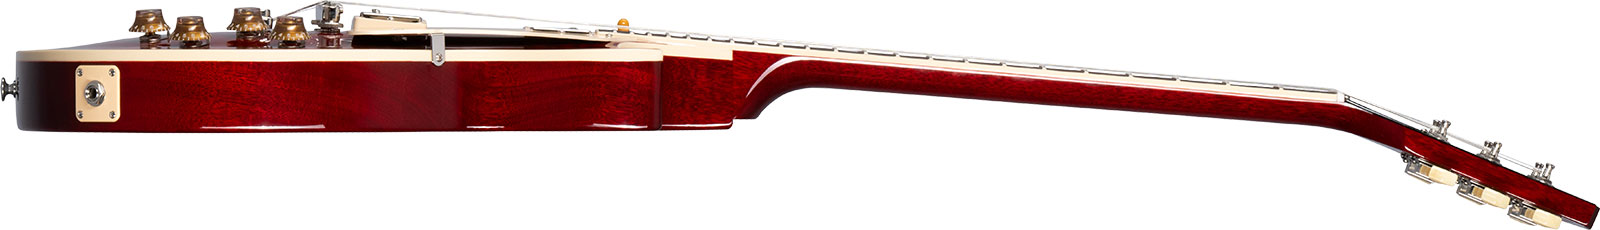 Gibson Les Paul Standard 50s Figured Original 2h Ht Rw - 60s Cherry - Enkel gesneden elektrische gitaar - Variation 2